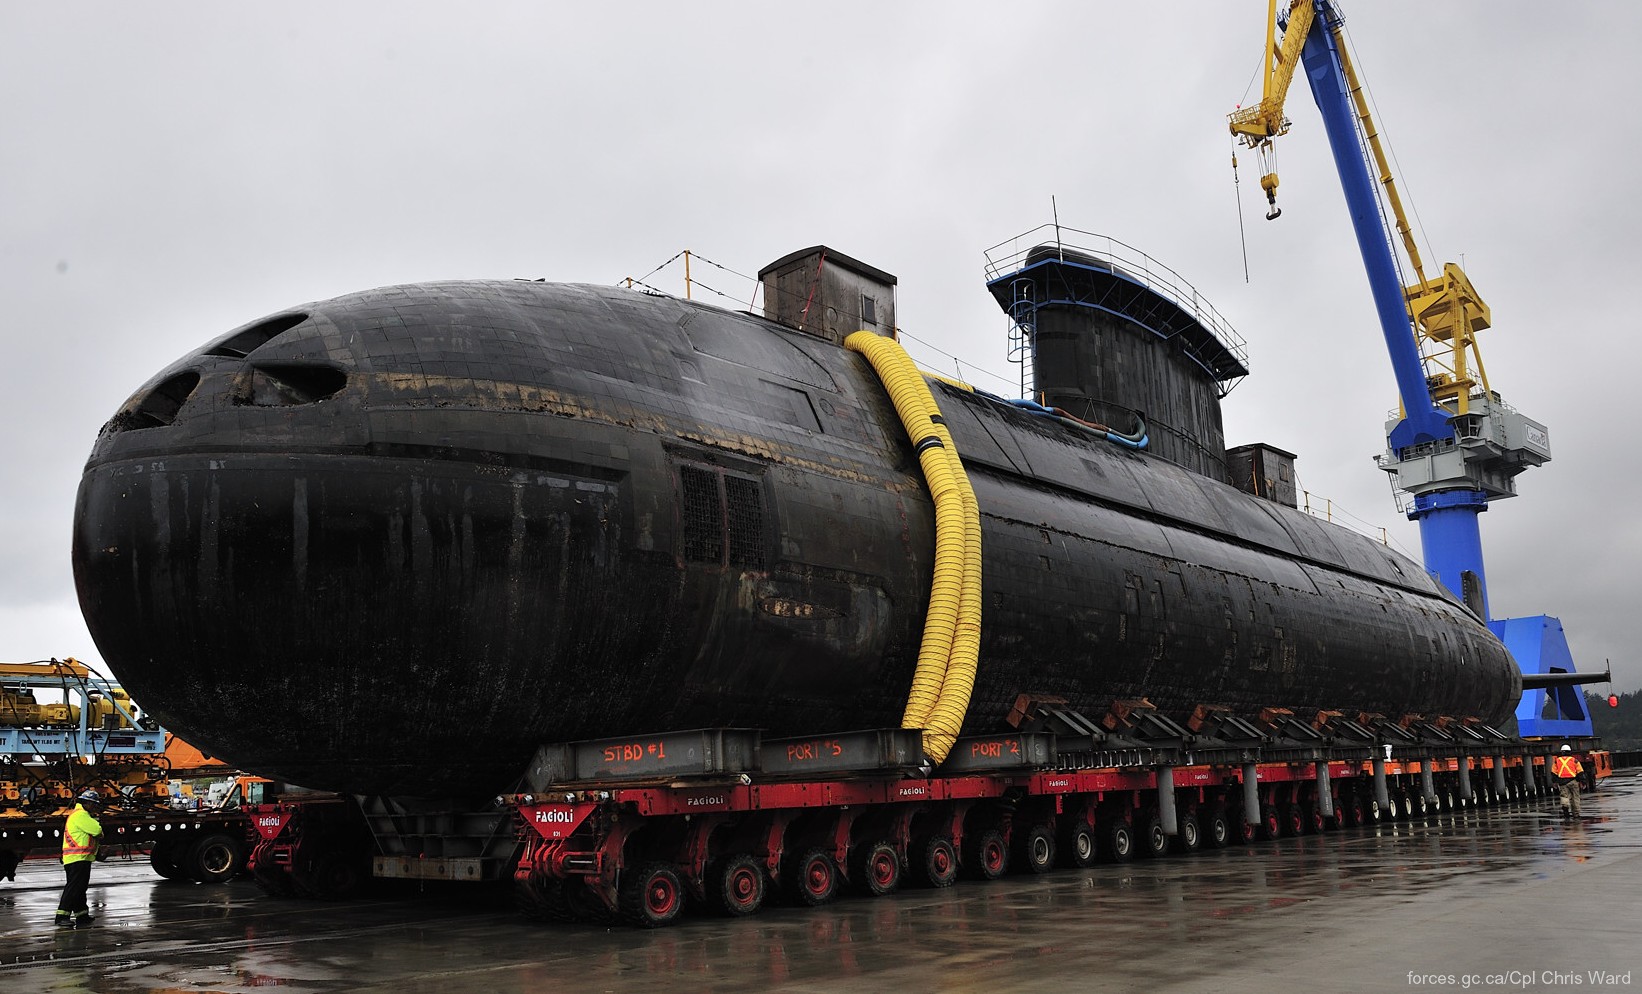 upholder class attack submarine ssk hunter killer royal navy 04